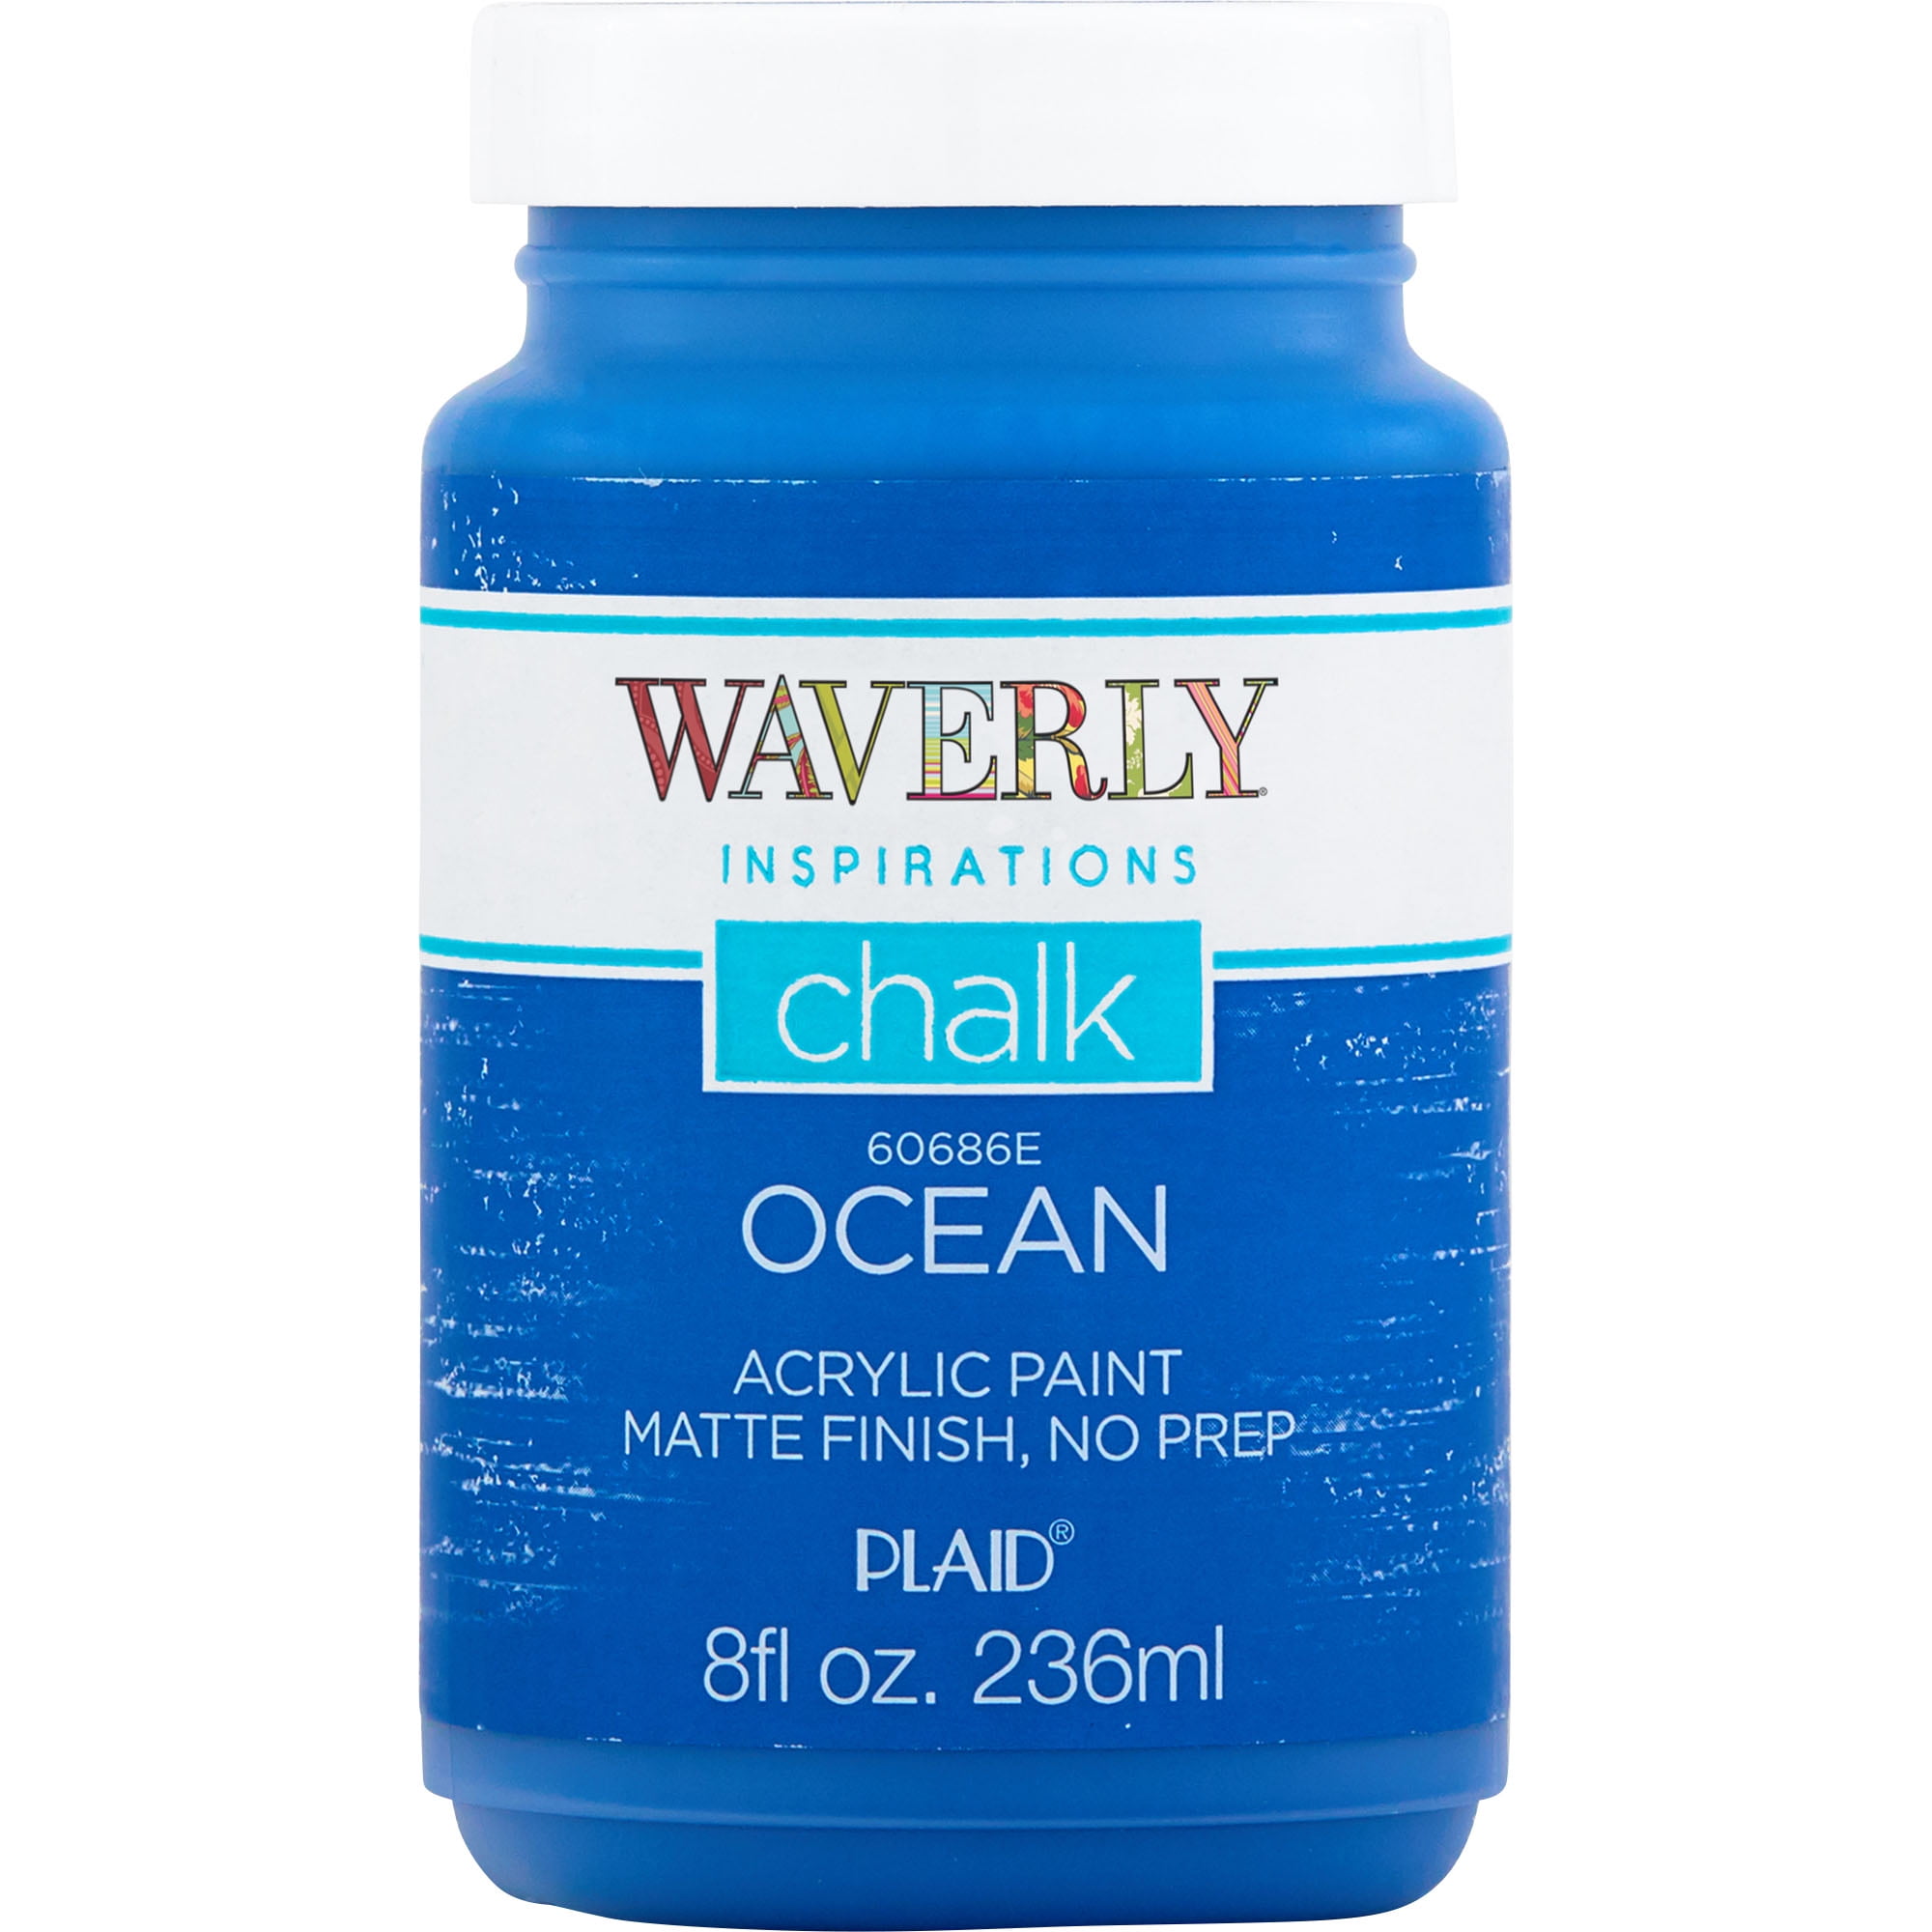 Waverly Inspirations Chalk Paint, Ultra Matte, Ocean, 8 fl oz